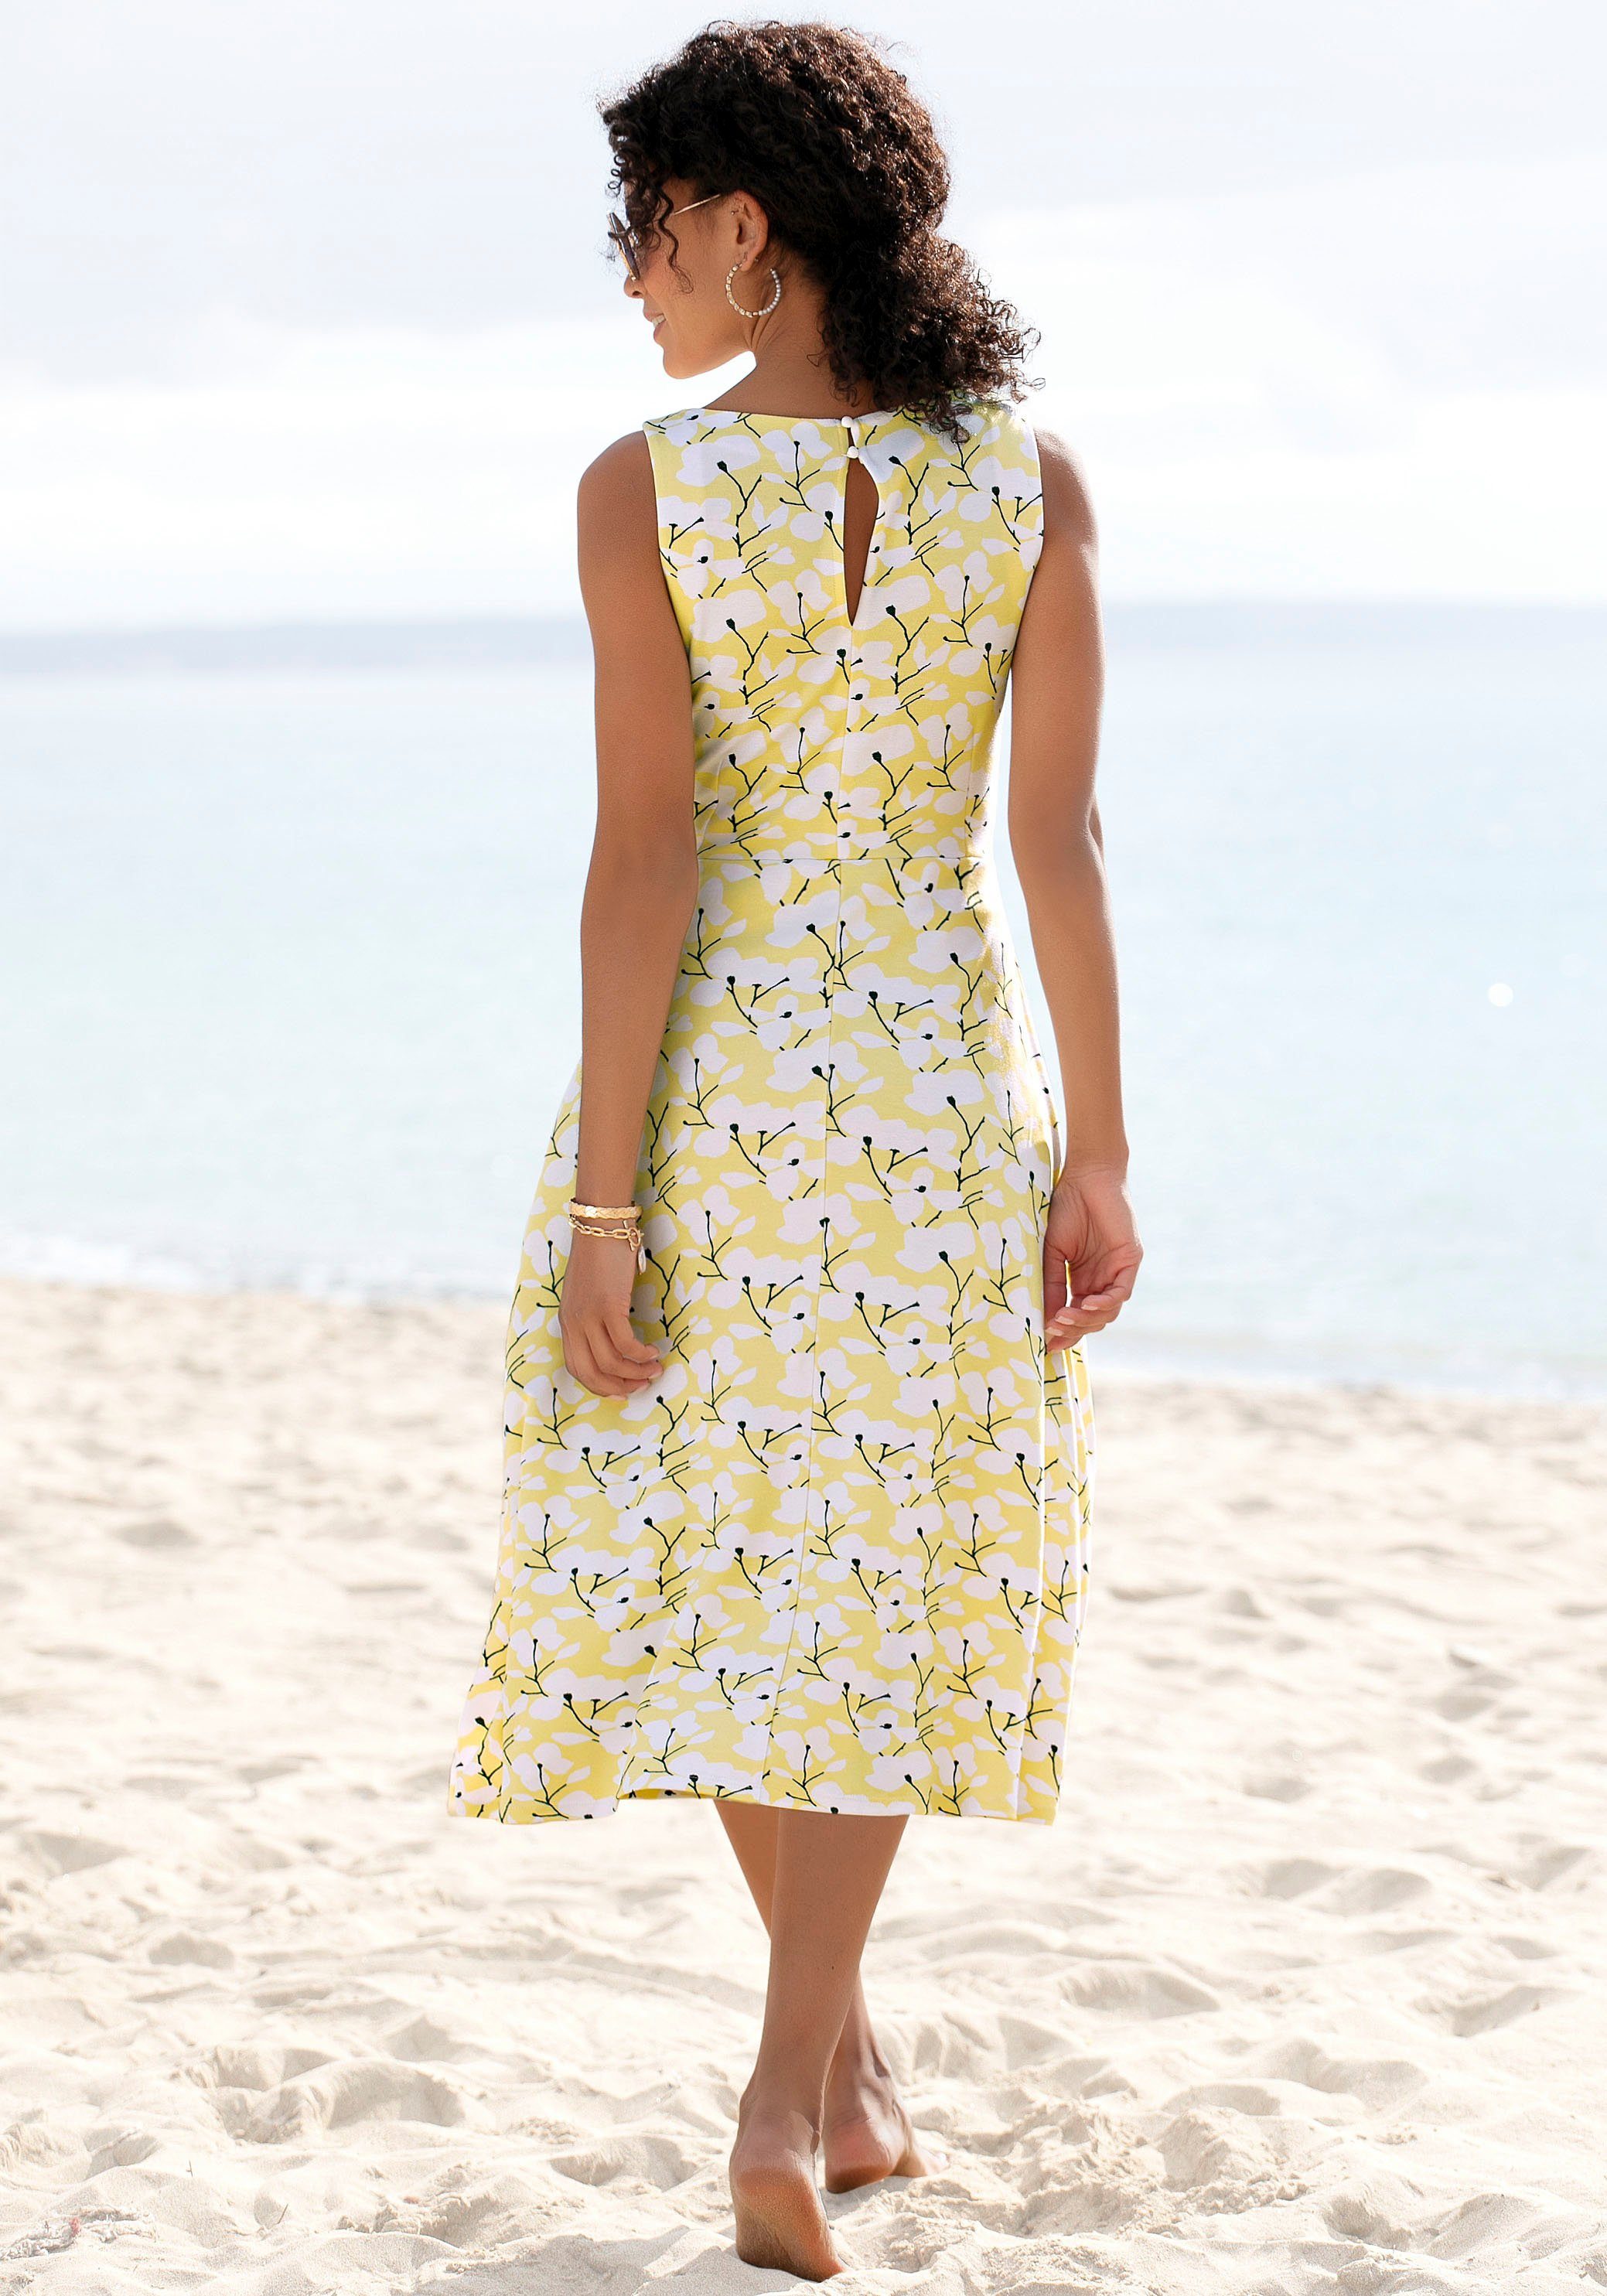 Beachtime Sommerkleid mit Blumendruck, Strandmode, gelb-creme-bedruckt Strandbekleidung